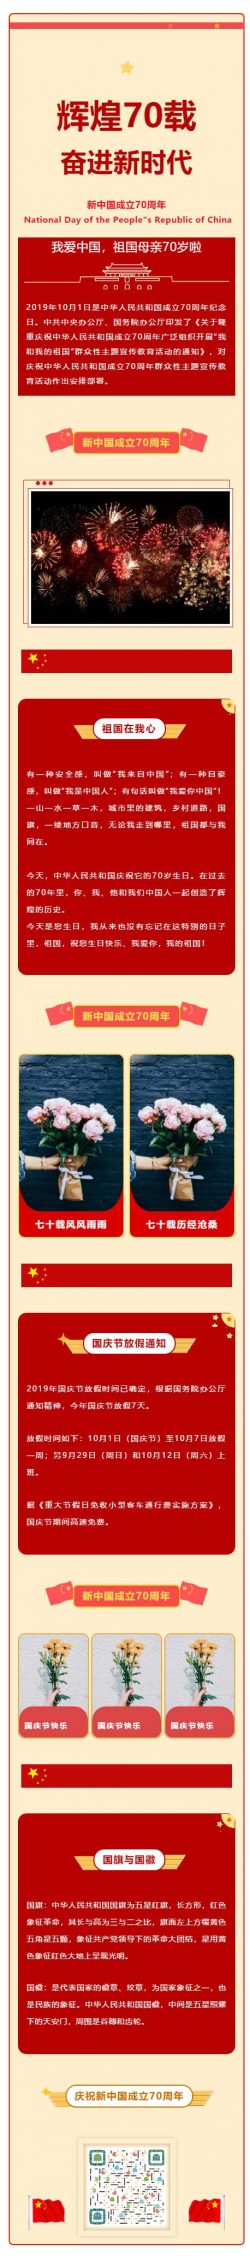 国庆节新中国成立70周年微信推文素材图文消息模板推送文章